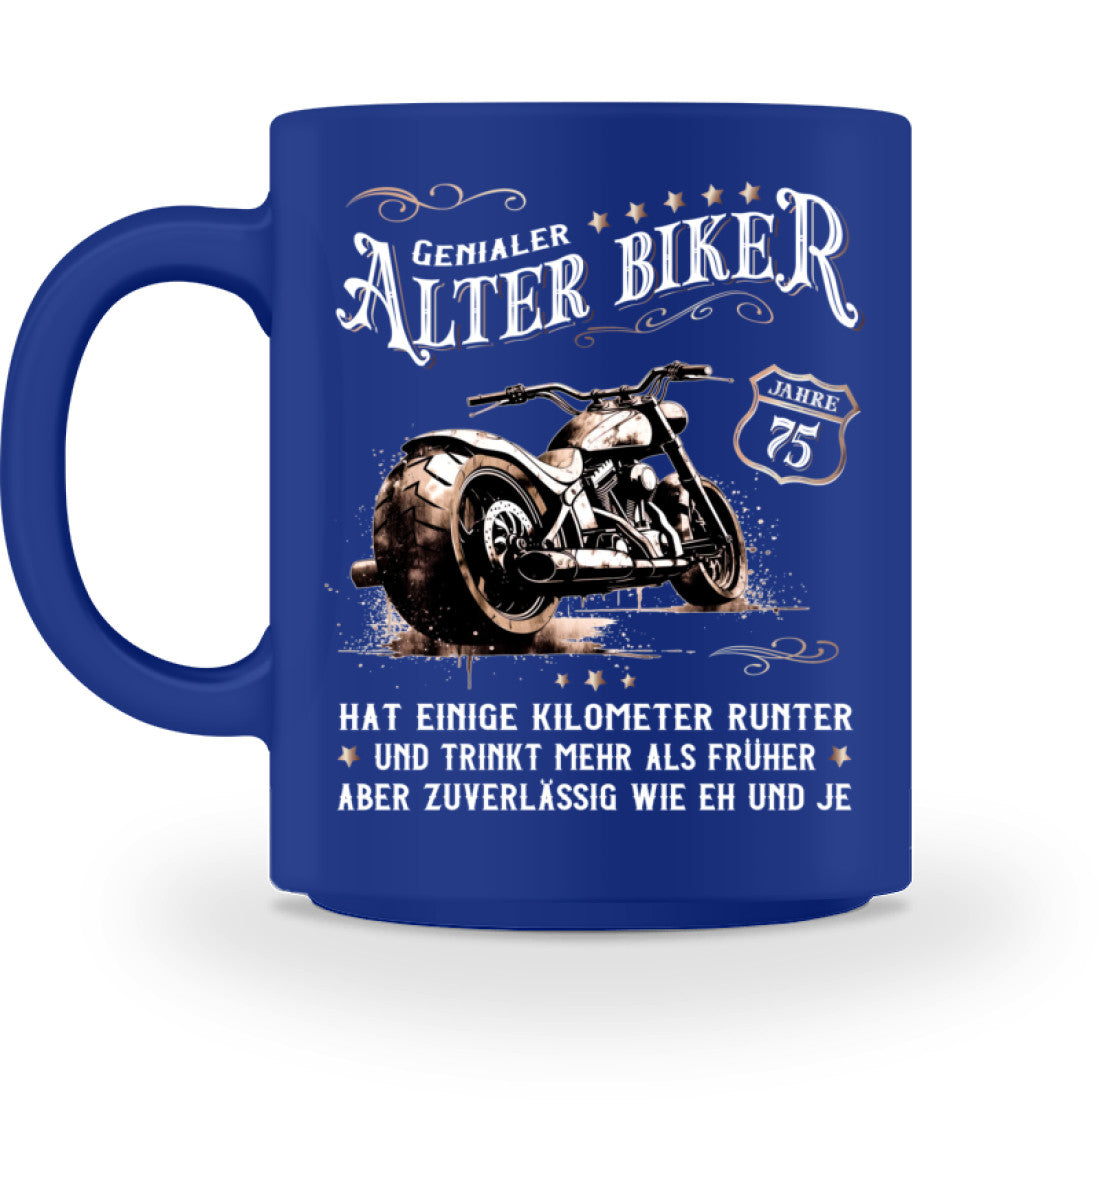 Eine Biker Geburtstags-Tasse für Motorradfahrer, von Wingbikers, mit dem beidseitigen Aufdruck, Alter Biker - 75 Jahre - Einige Kilometer runter, trinkt mehr - aber zuverlässig wie eh und je, in blau.